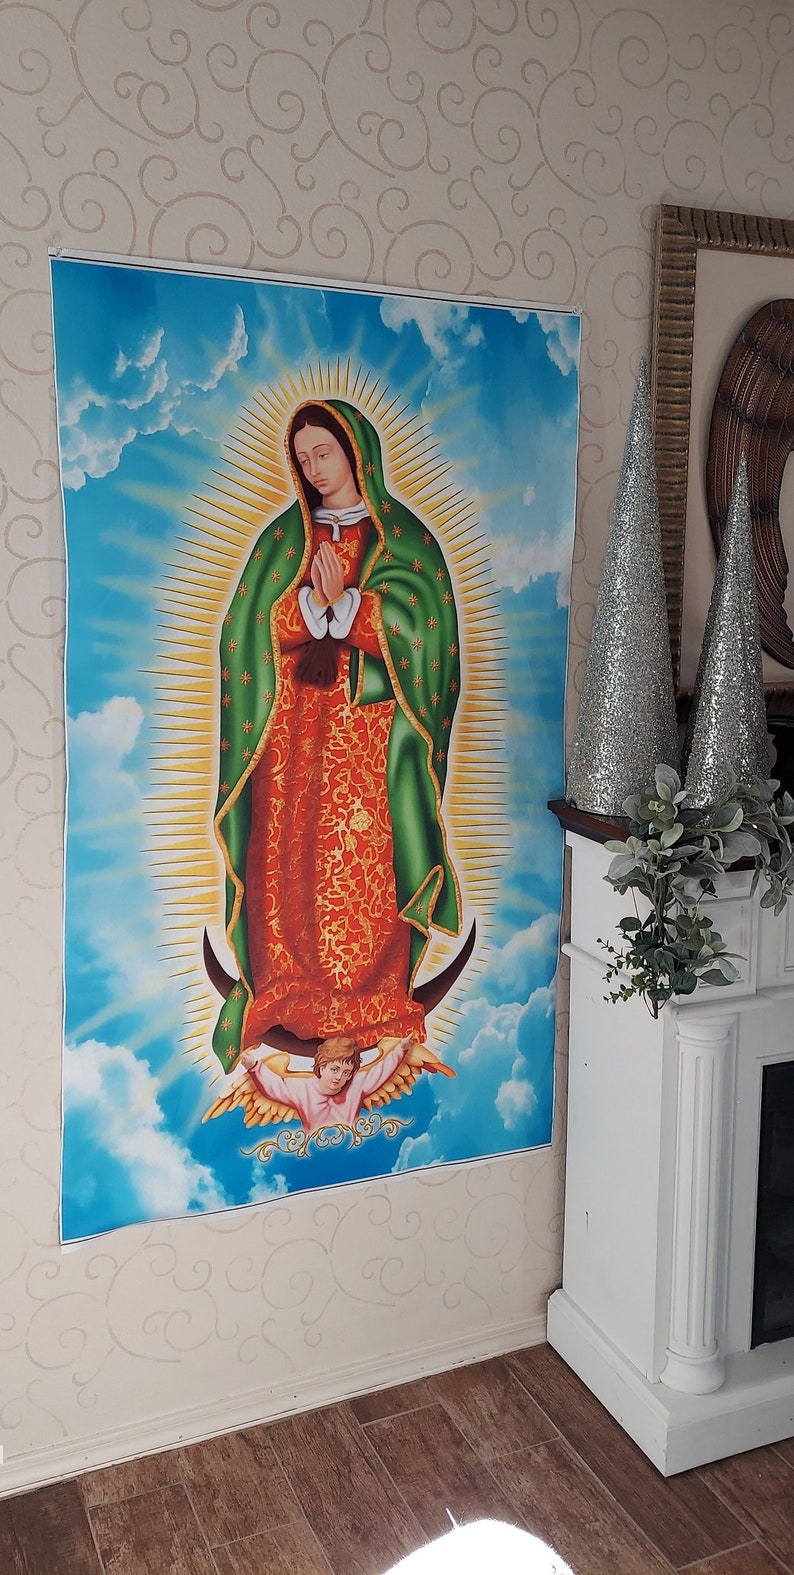 La Virgen de Guadalupe, La Virgen Maria, Our Lady Guadalupe, Virgin Mary , big Virgin Mary art canvas, Our lady of Guadalupe poster image 3